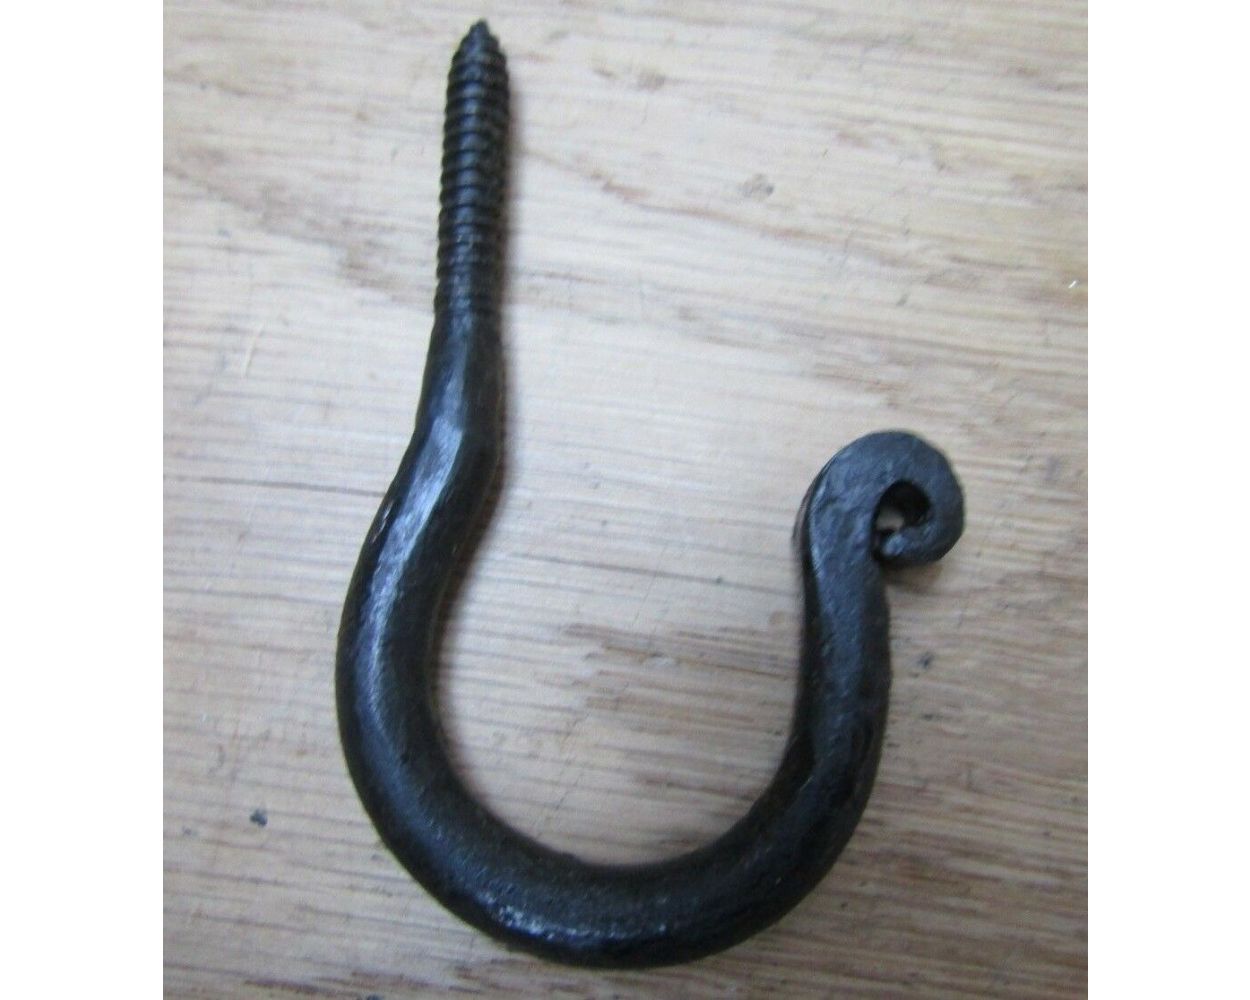 Screw in Ceiling Hook handforged rustic vintage hanging hooks